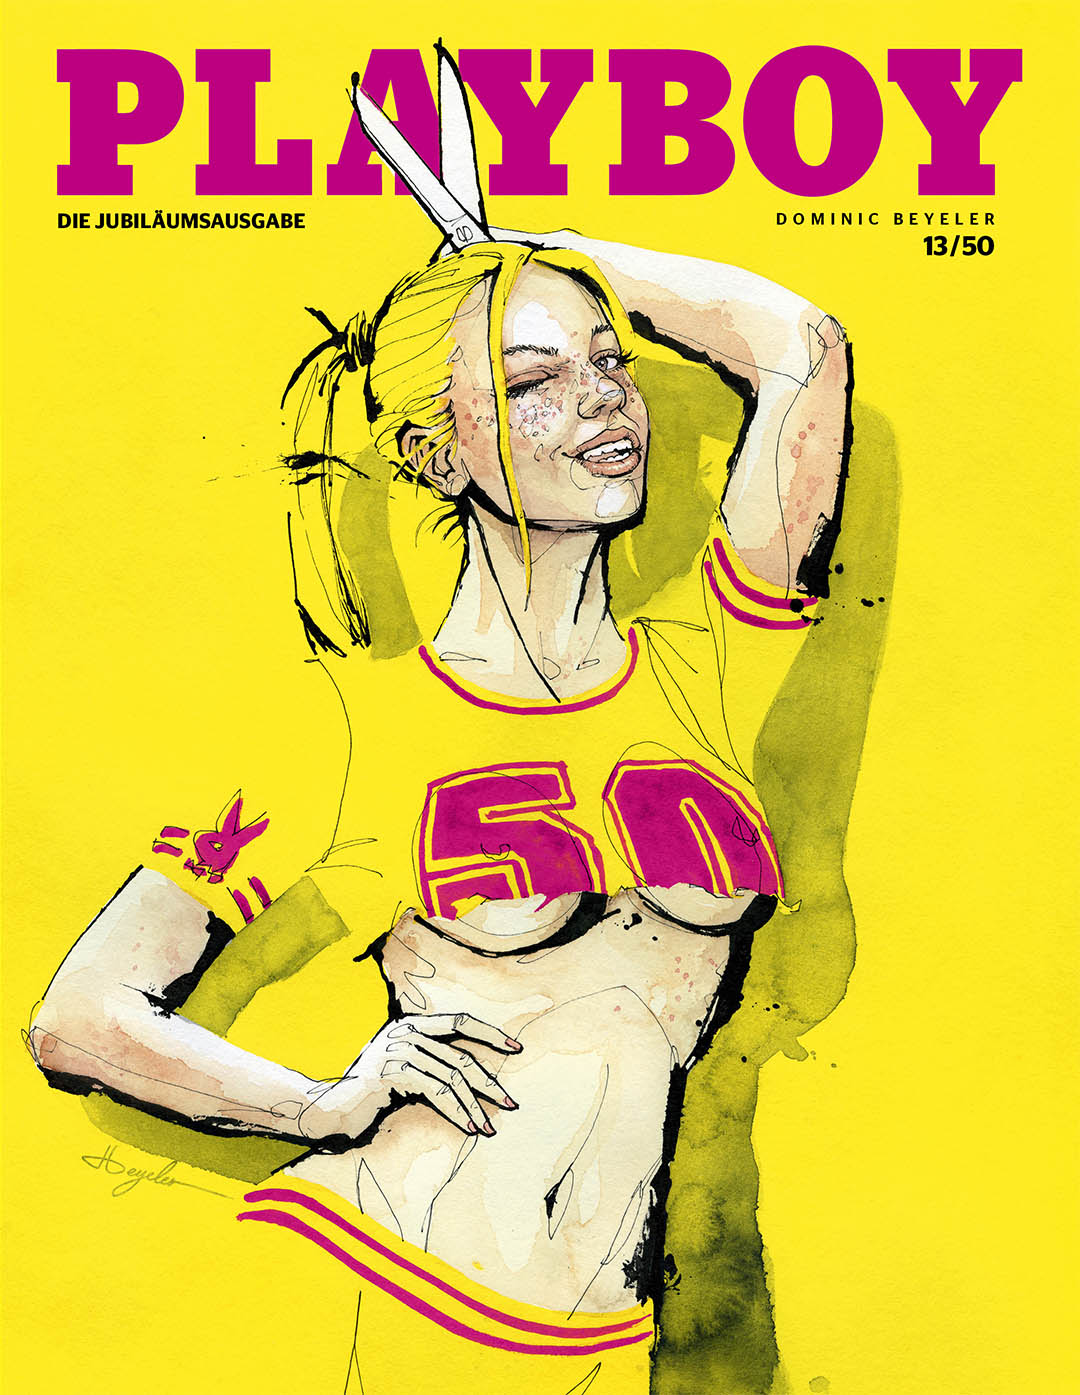 50 Jahre. 50 Cover. Das Titelbild gestaltet von Dominic Beyeler